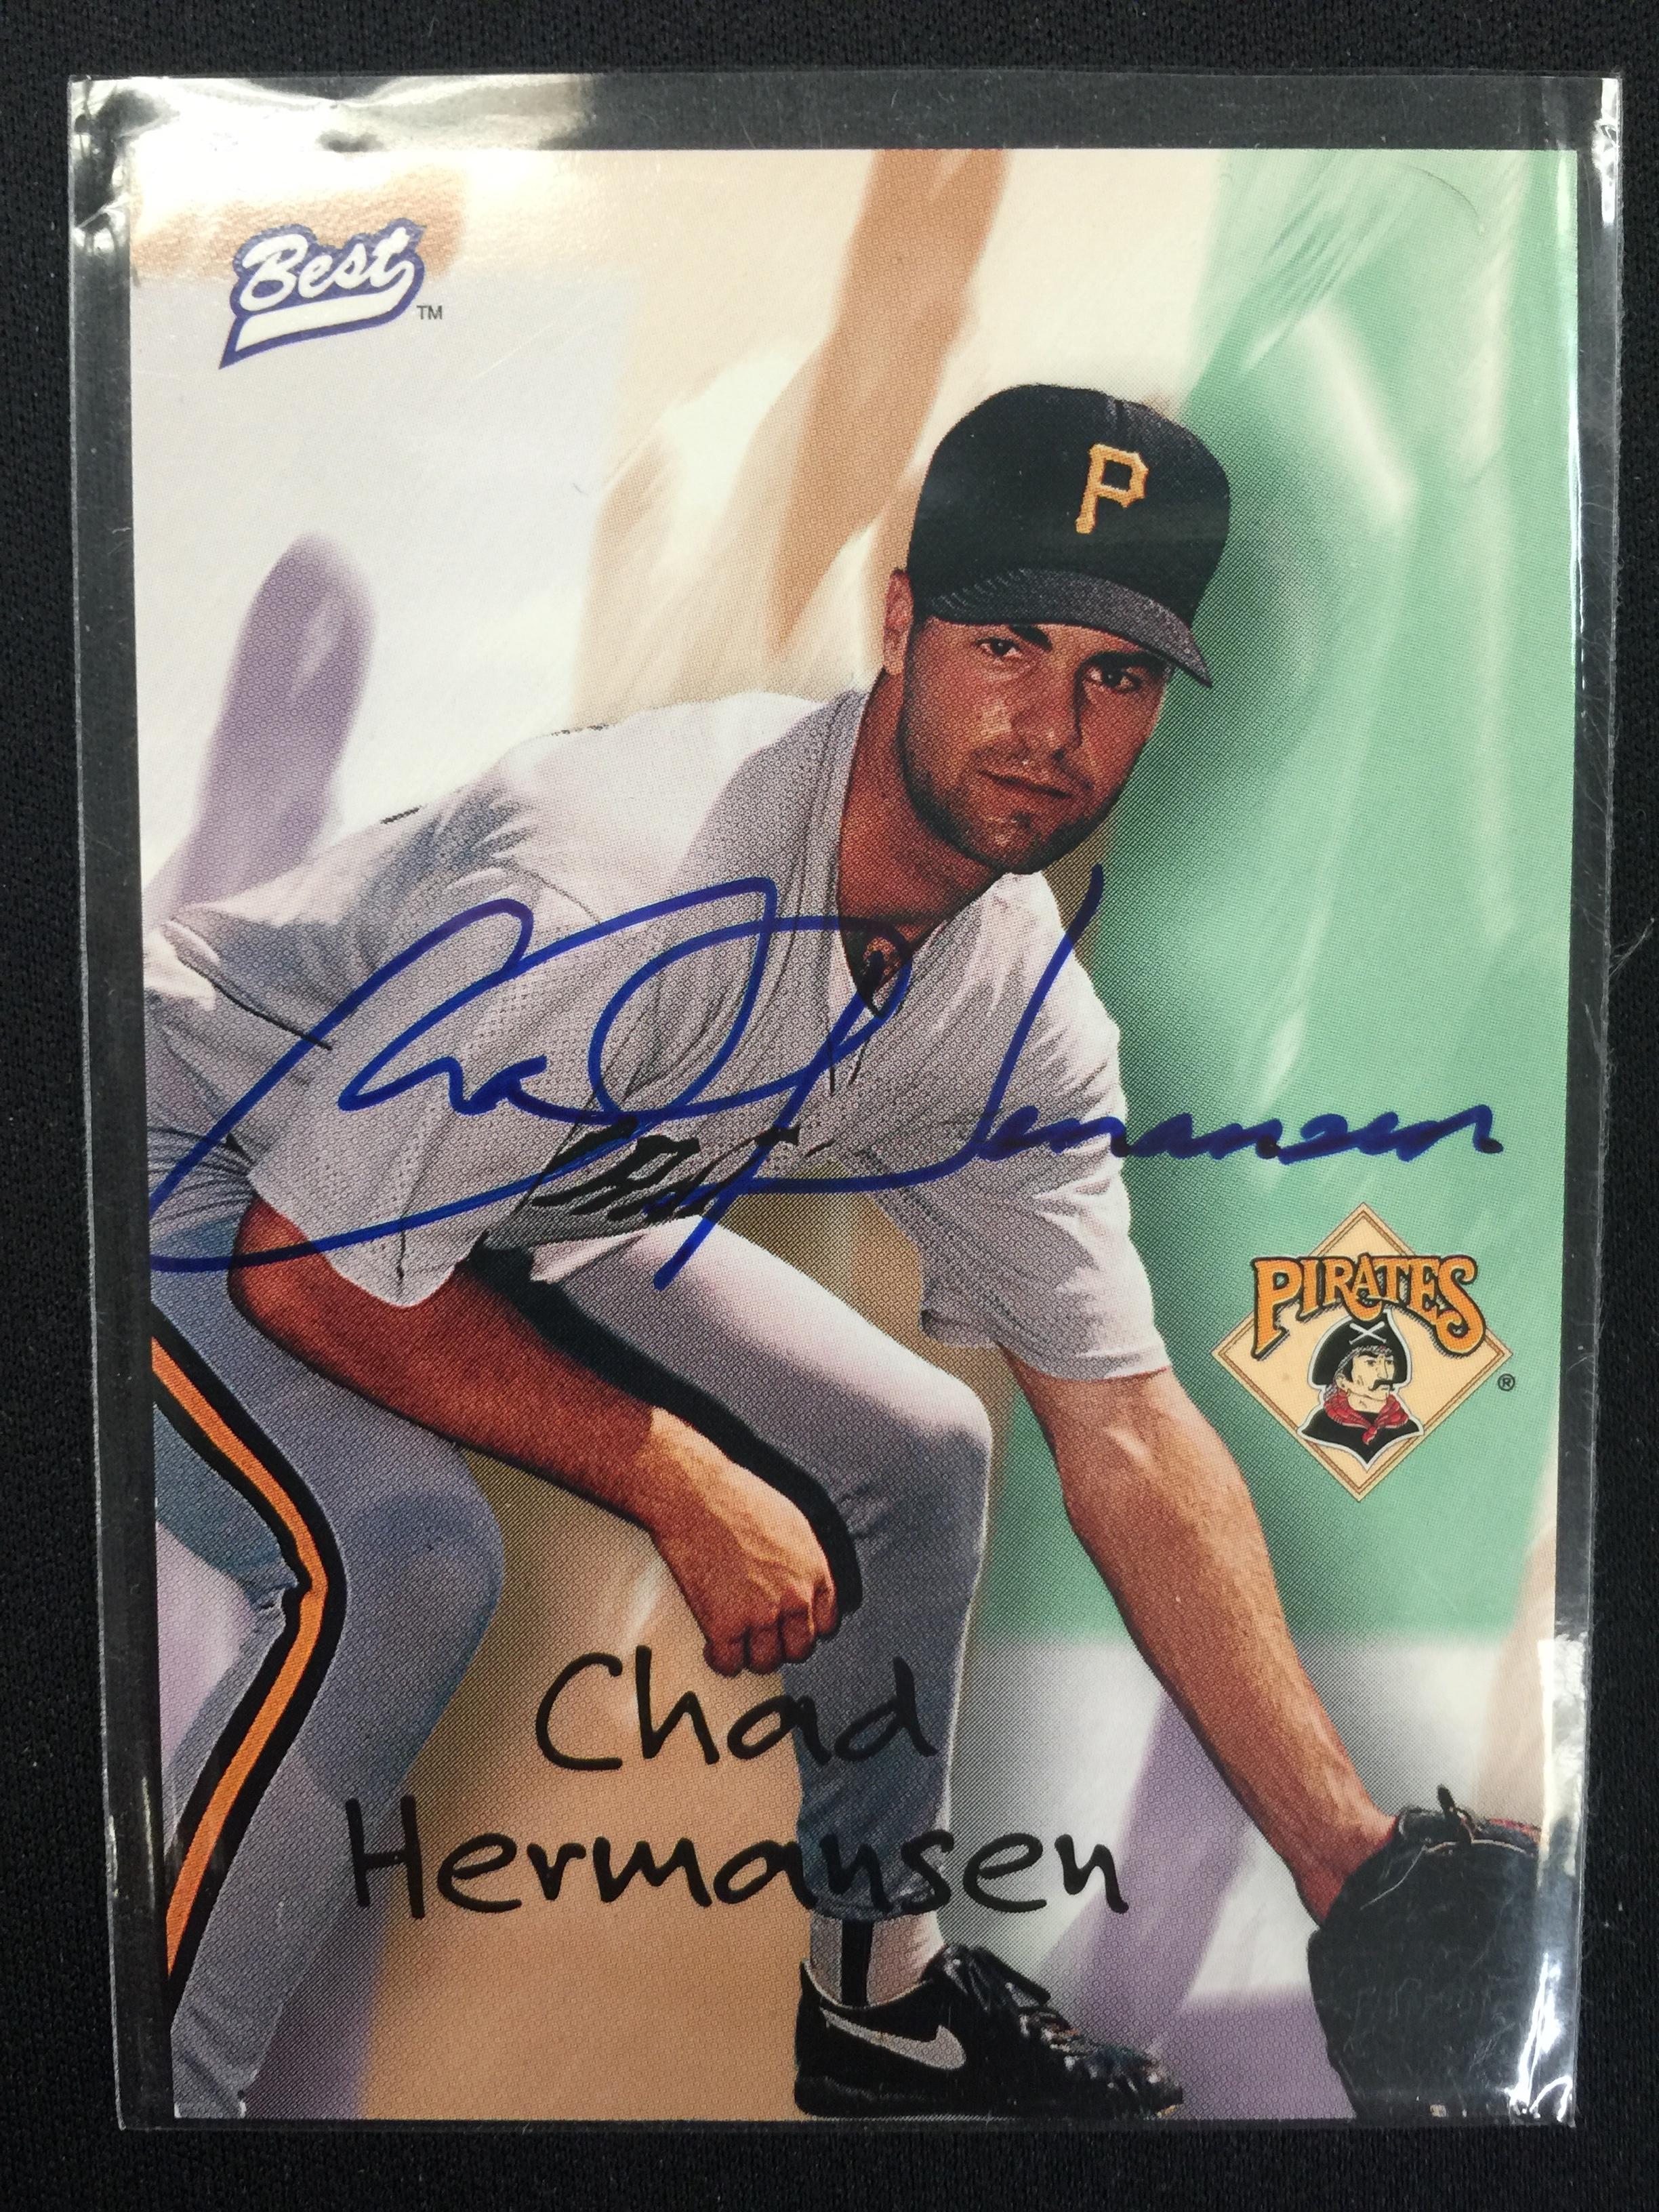 1998 Best Chad Hermansen Pirates Autograph Card